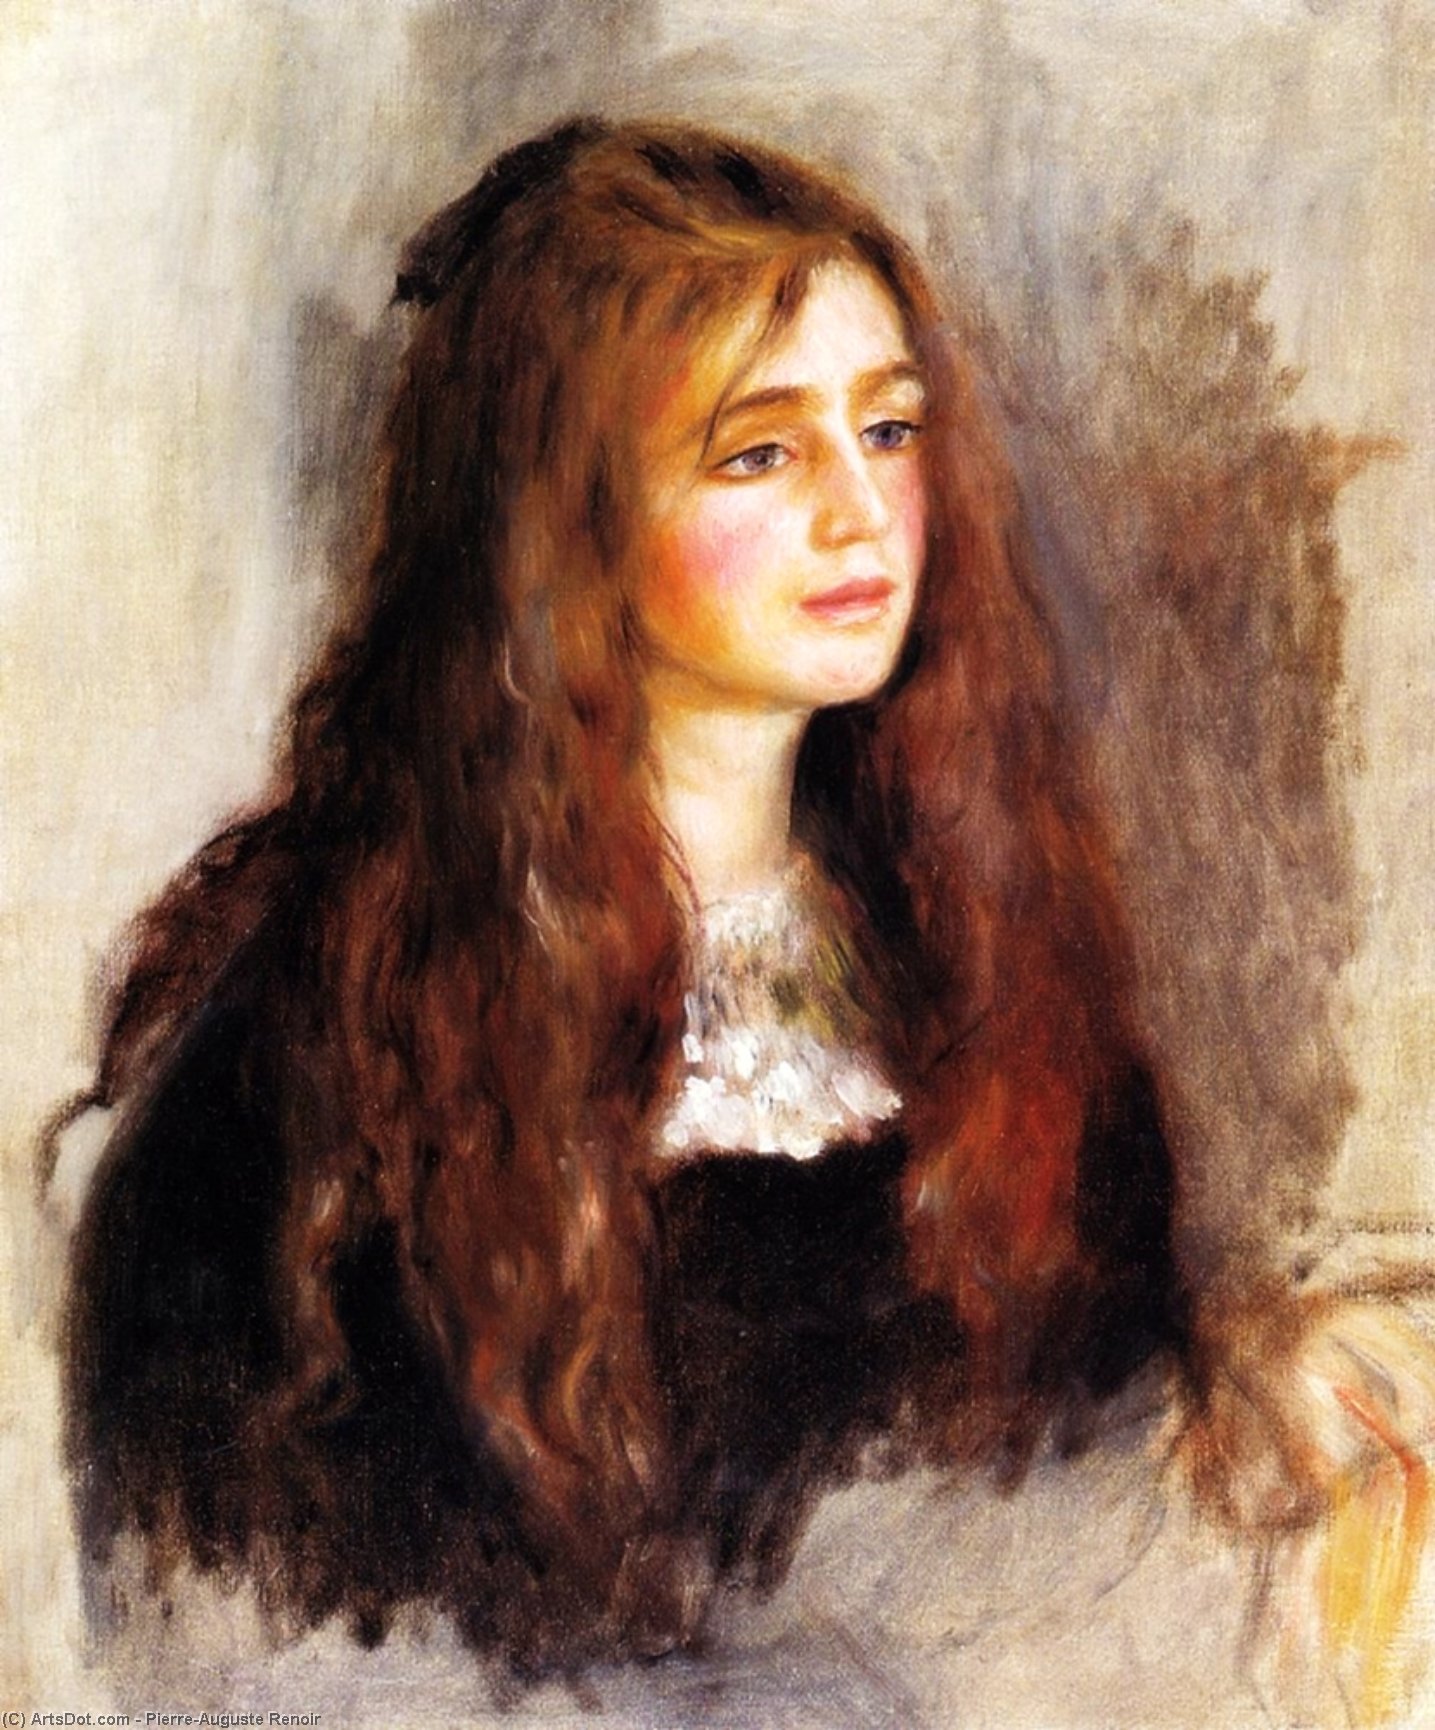 Acheter Reproductions D'art De Musée Julie Manet, 1894 de Pierre-Auguste Renoir (1841-1919, France) | ArtsDot.com